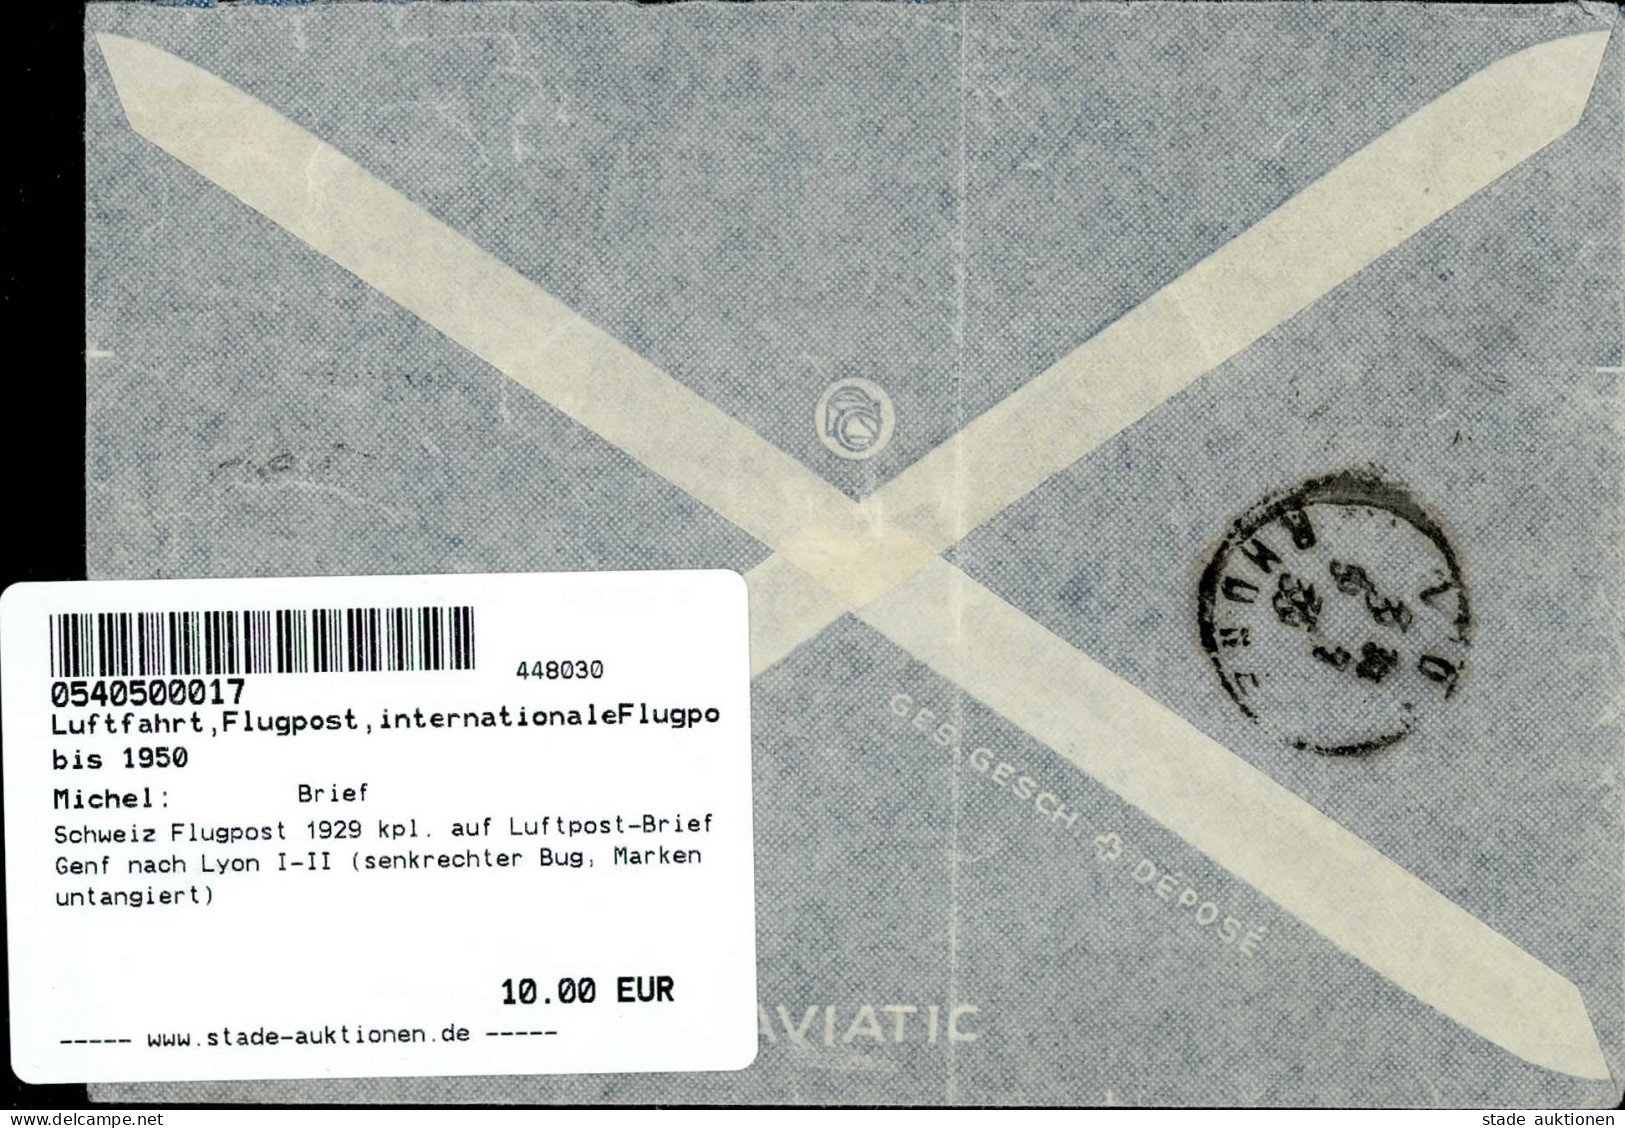 Schweiz Flugpost 1929 Kpl. Auf Luftpost-Brief Genf Nach Lyon I-II (senkrechter Bug, Marken Untangiert) - Guerra 1914-18